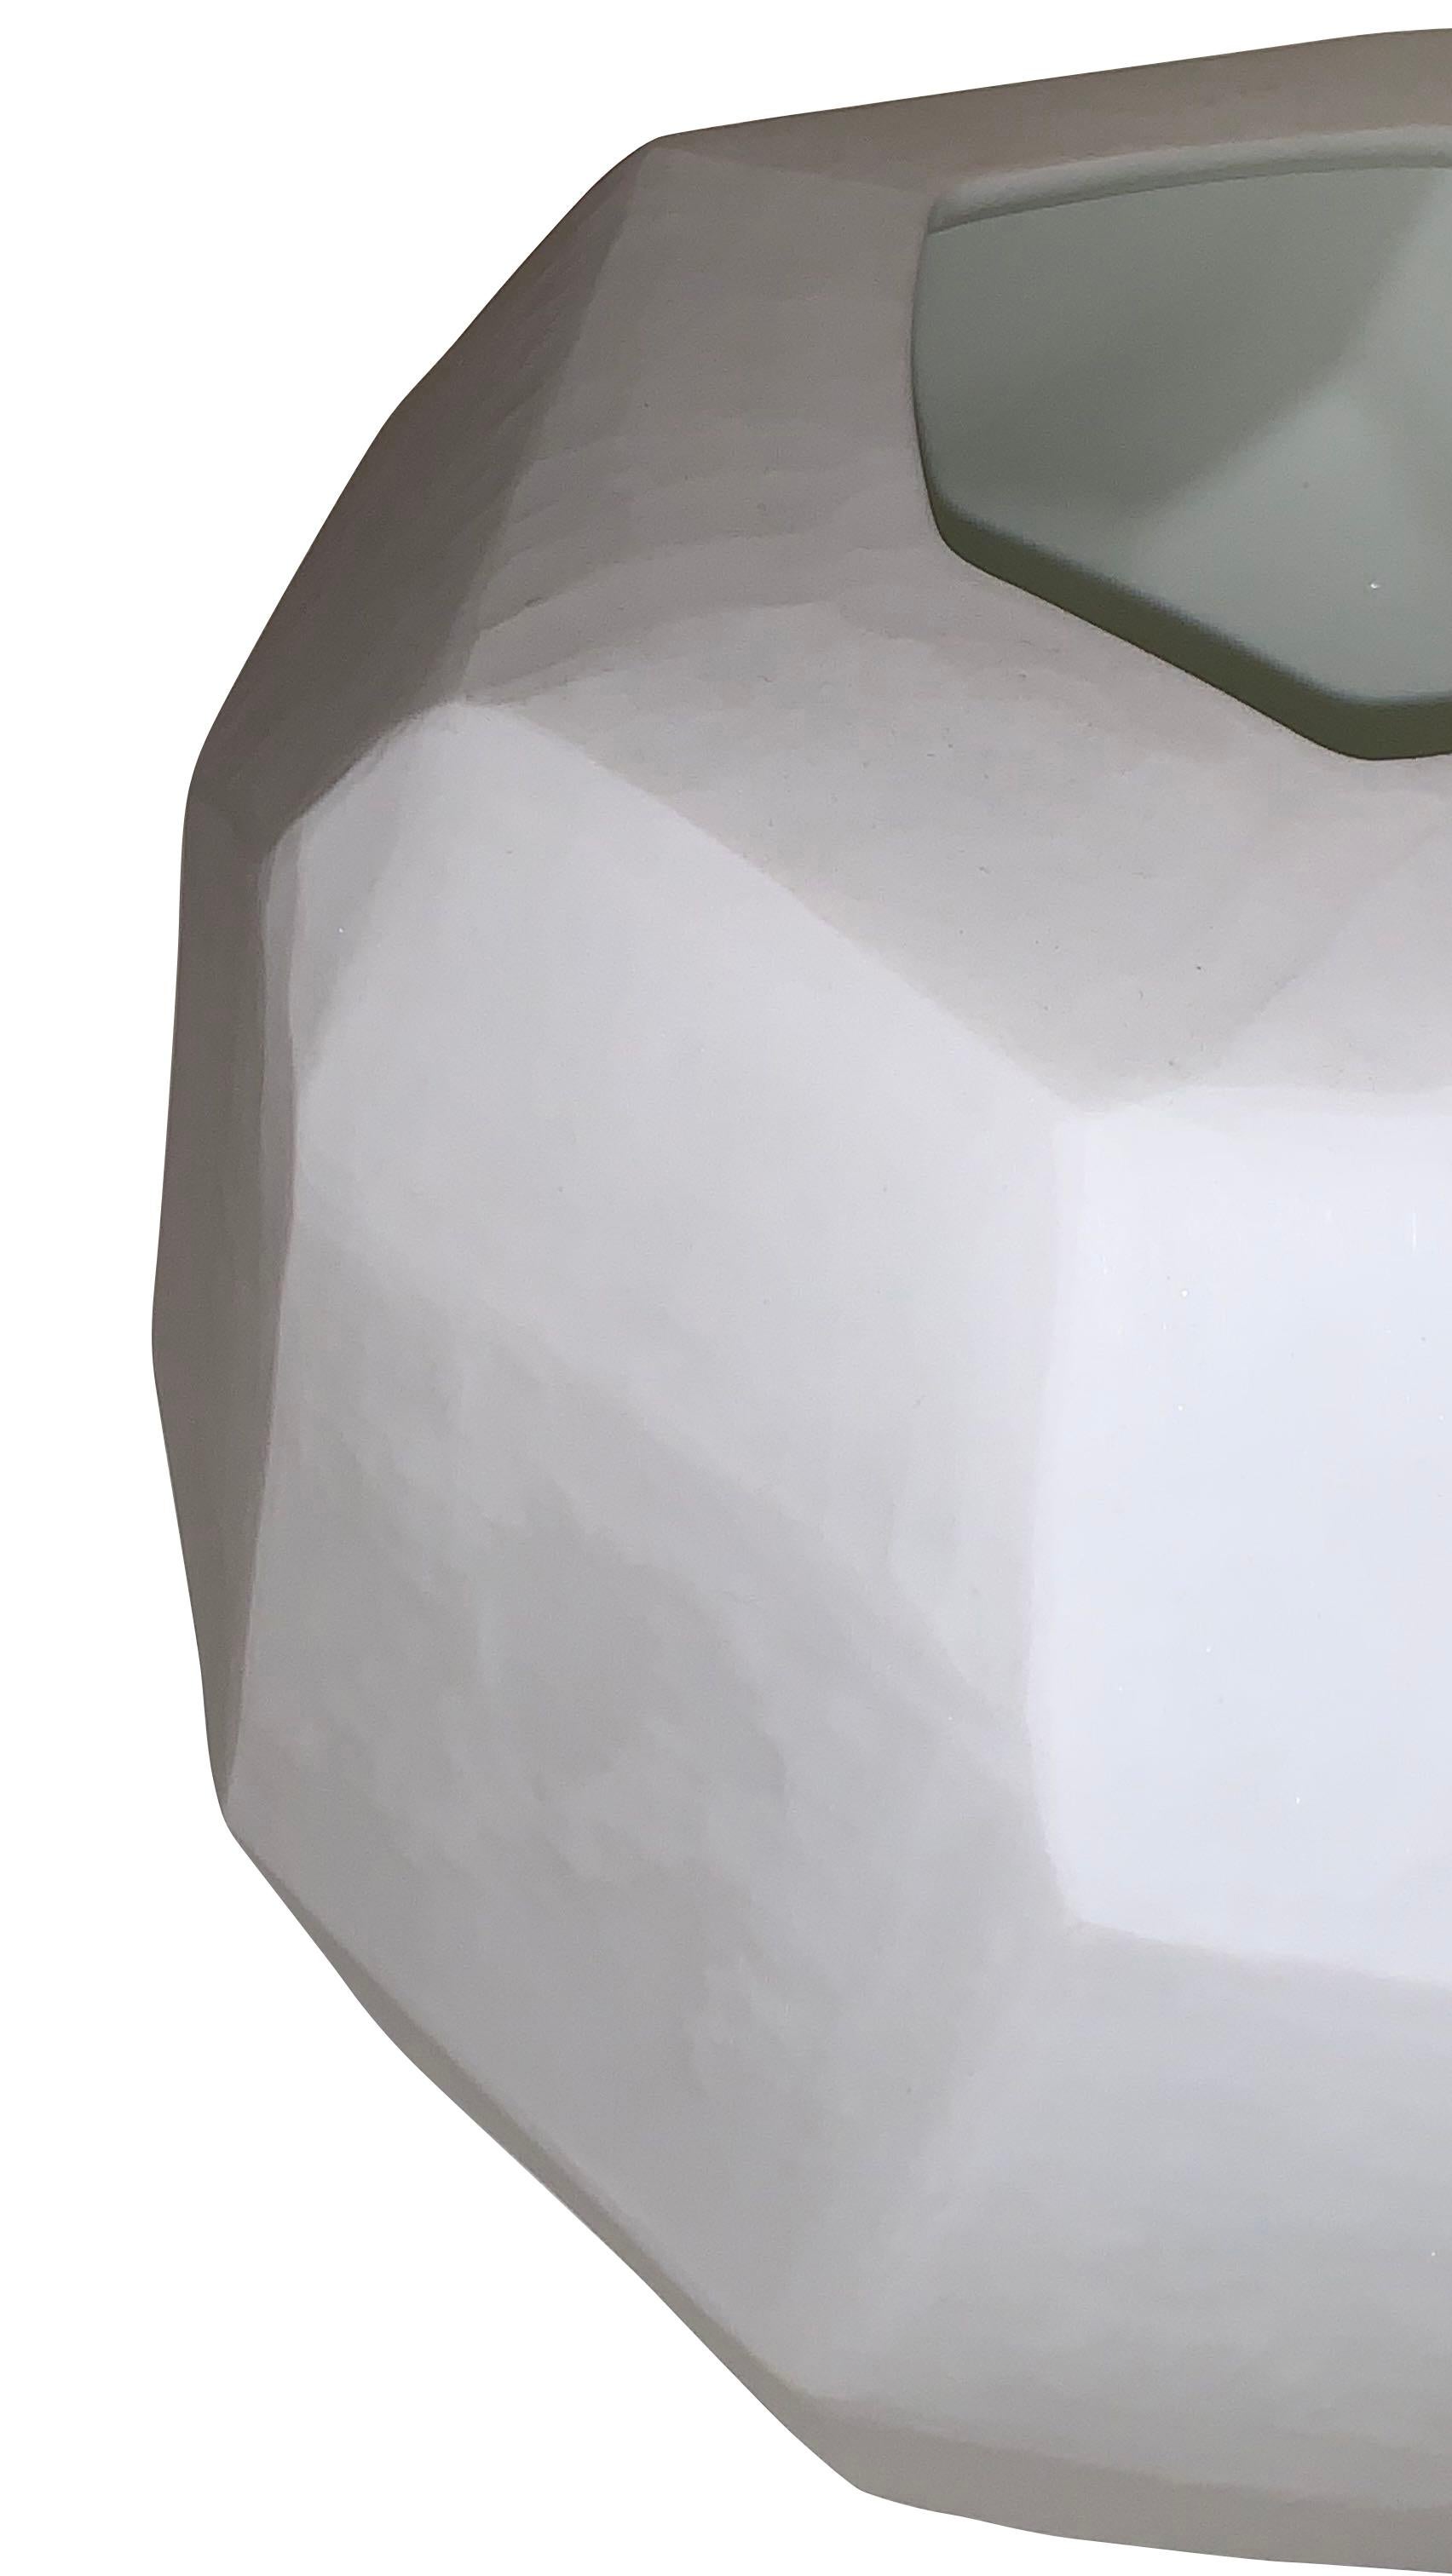 Zeitgenössische rumänische Vase aus weißem, mattem Glas mit kubistischem Design.
Kann Wasser aufnehmen.
   